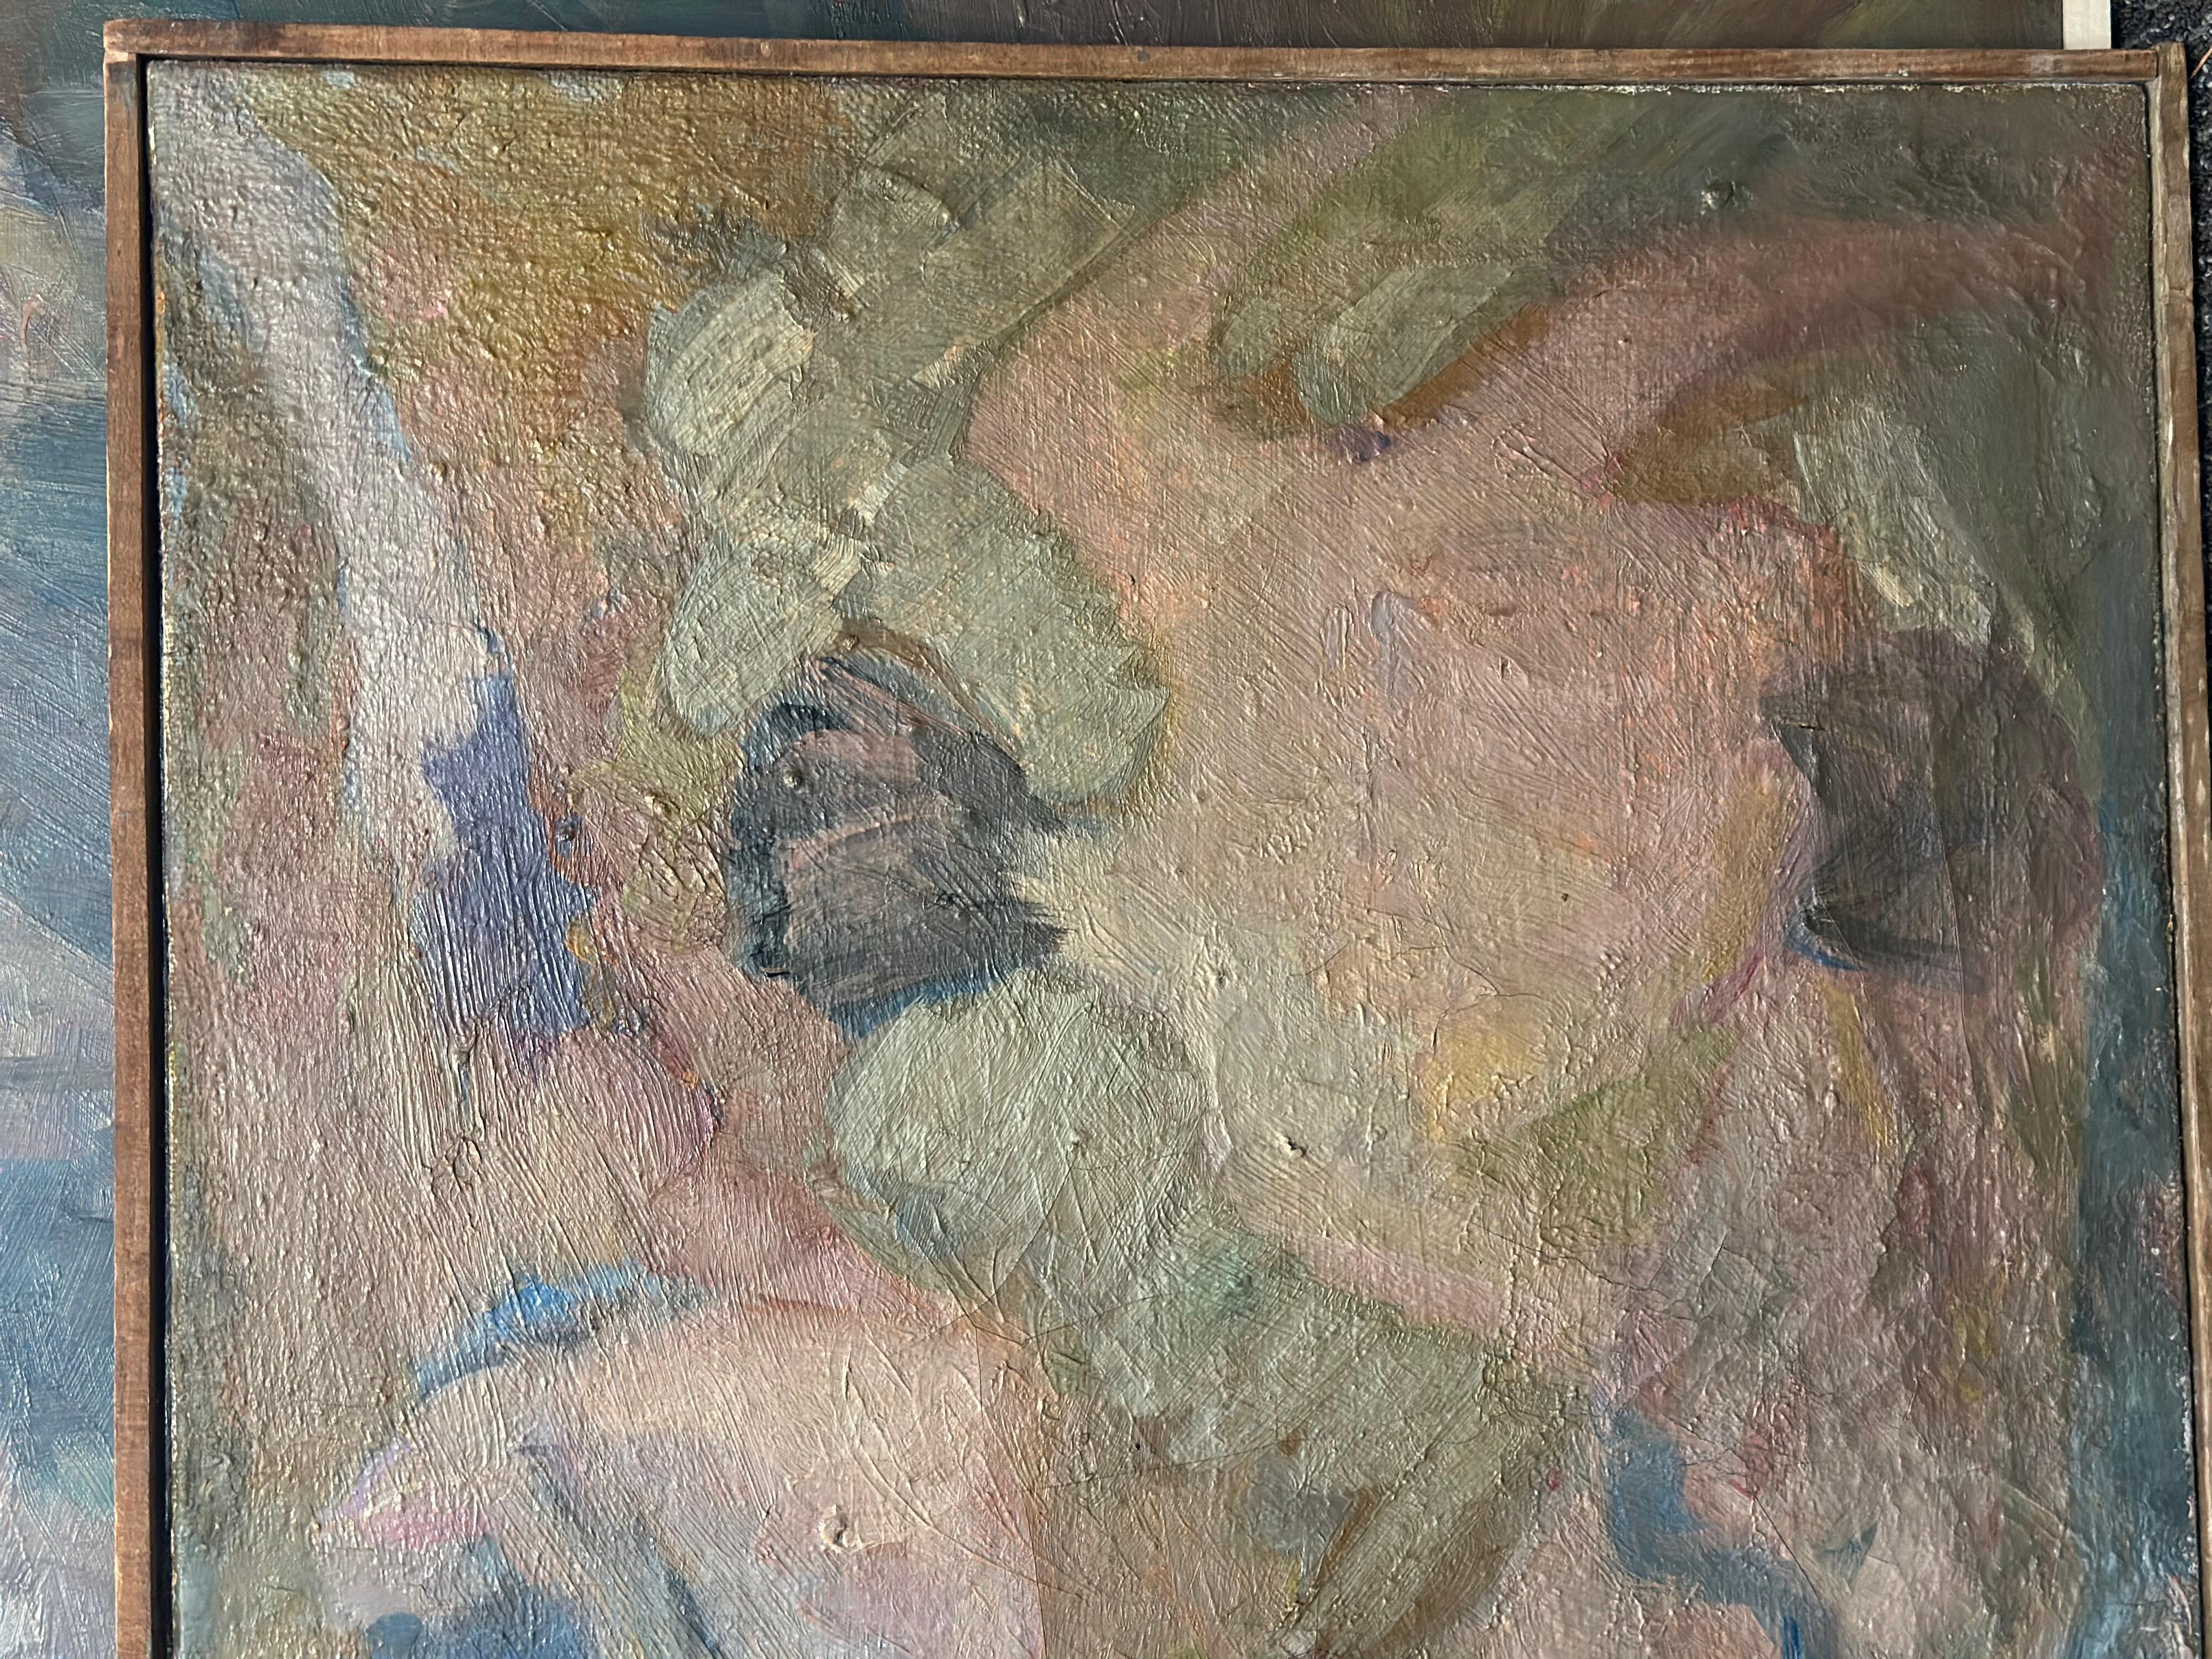 Des couleurs étonnantes et riches dans ce nu abstrait du peintre français Daniel Clesse.  Clesse est née en 1932 à Paris. Il s'est installé dans le sud de la France dans les années 1970 où il a peint jusqu'à sa mort en 2016. 